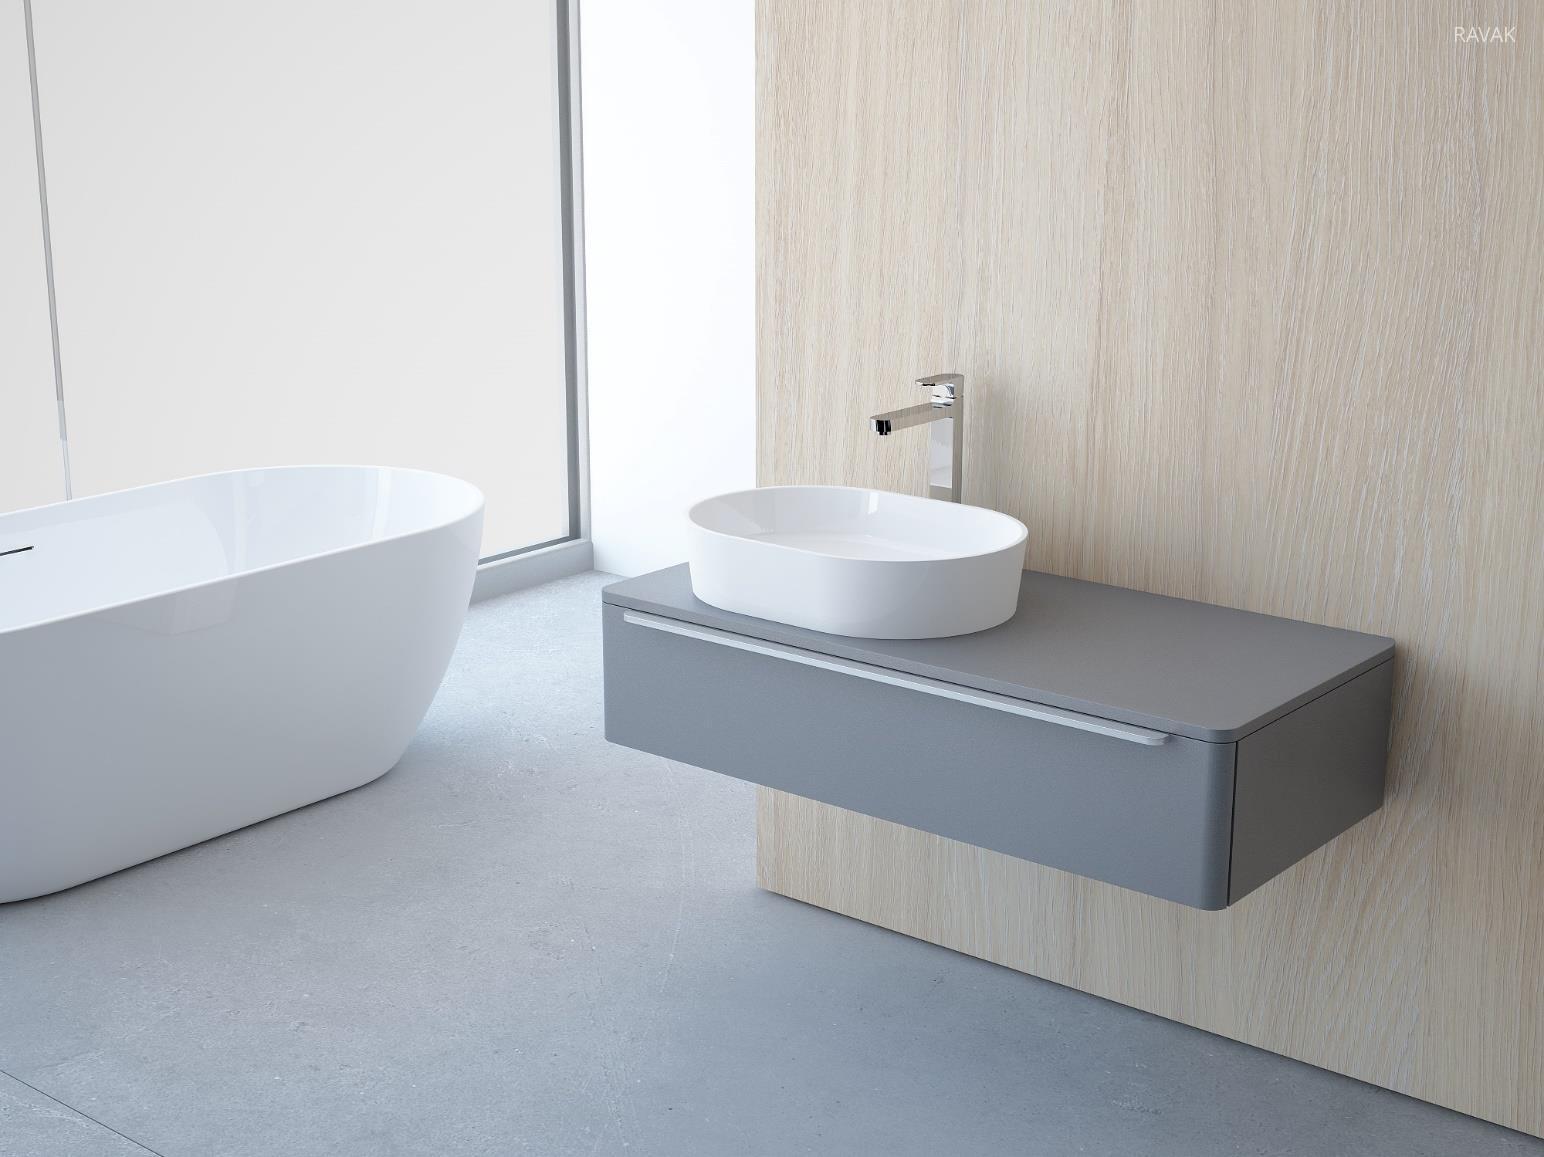 Rendhagyó formájú mosdó minimál stílusban - fürdő / WC ötlet, modern stílusban